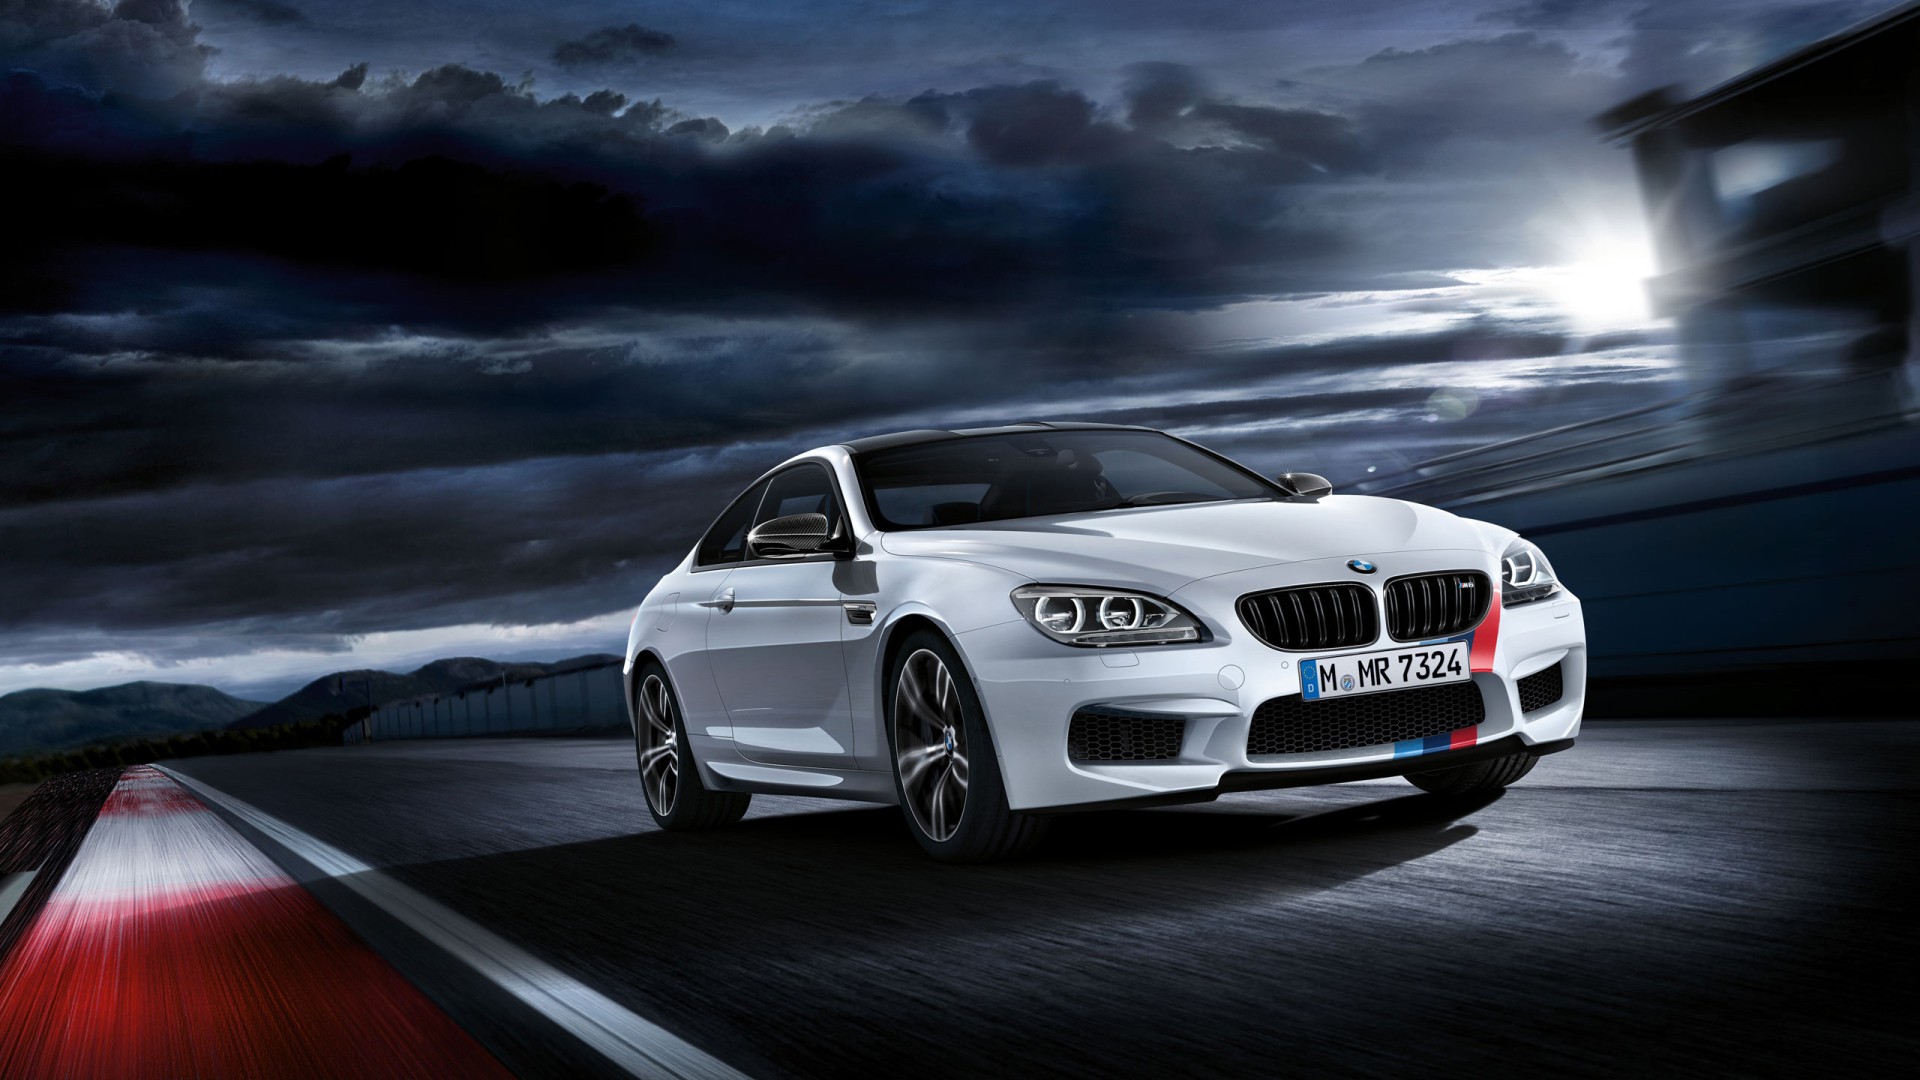 2013 BMW M6 Wallpaper | HD Car Wallpapers | ID #3918